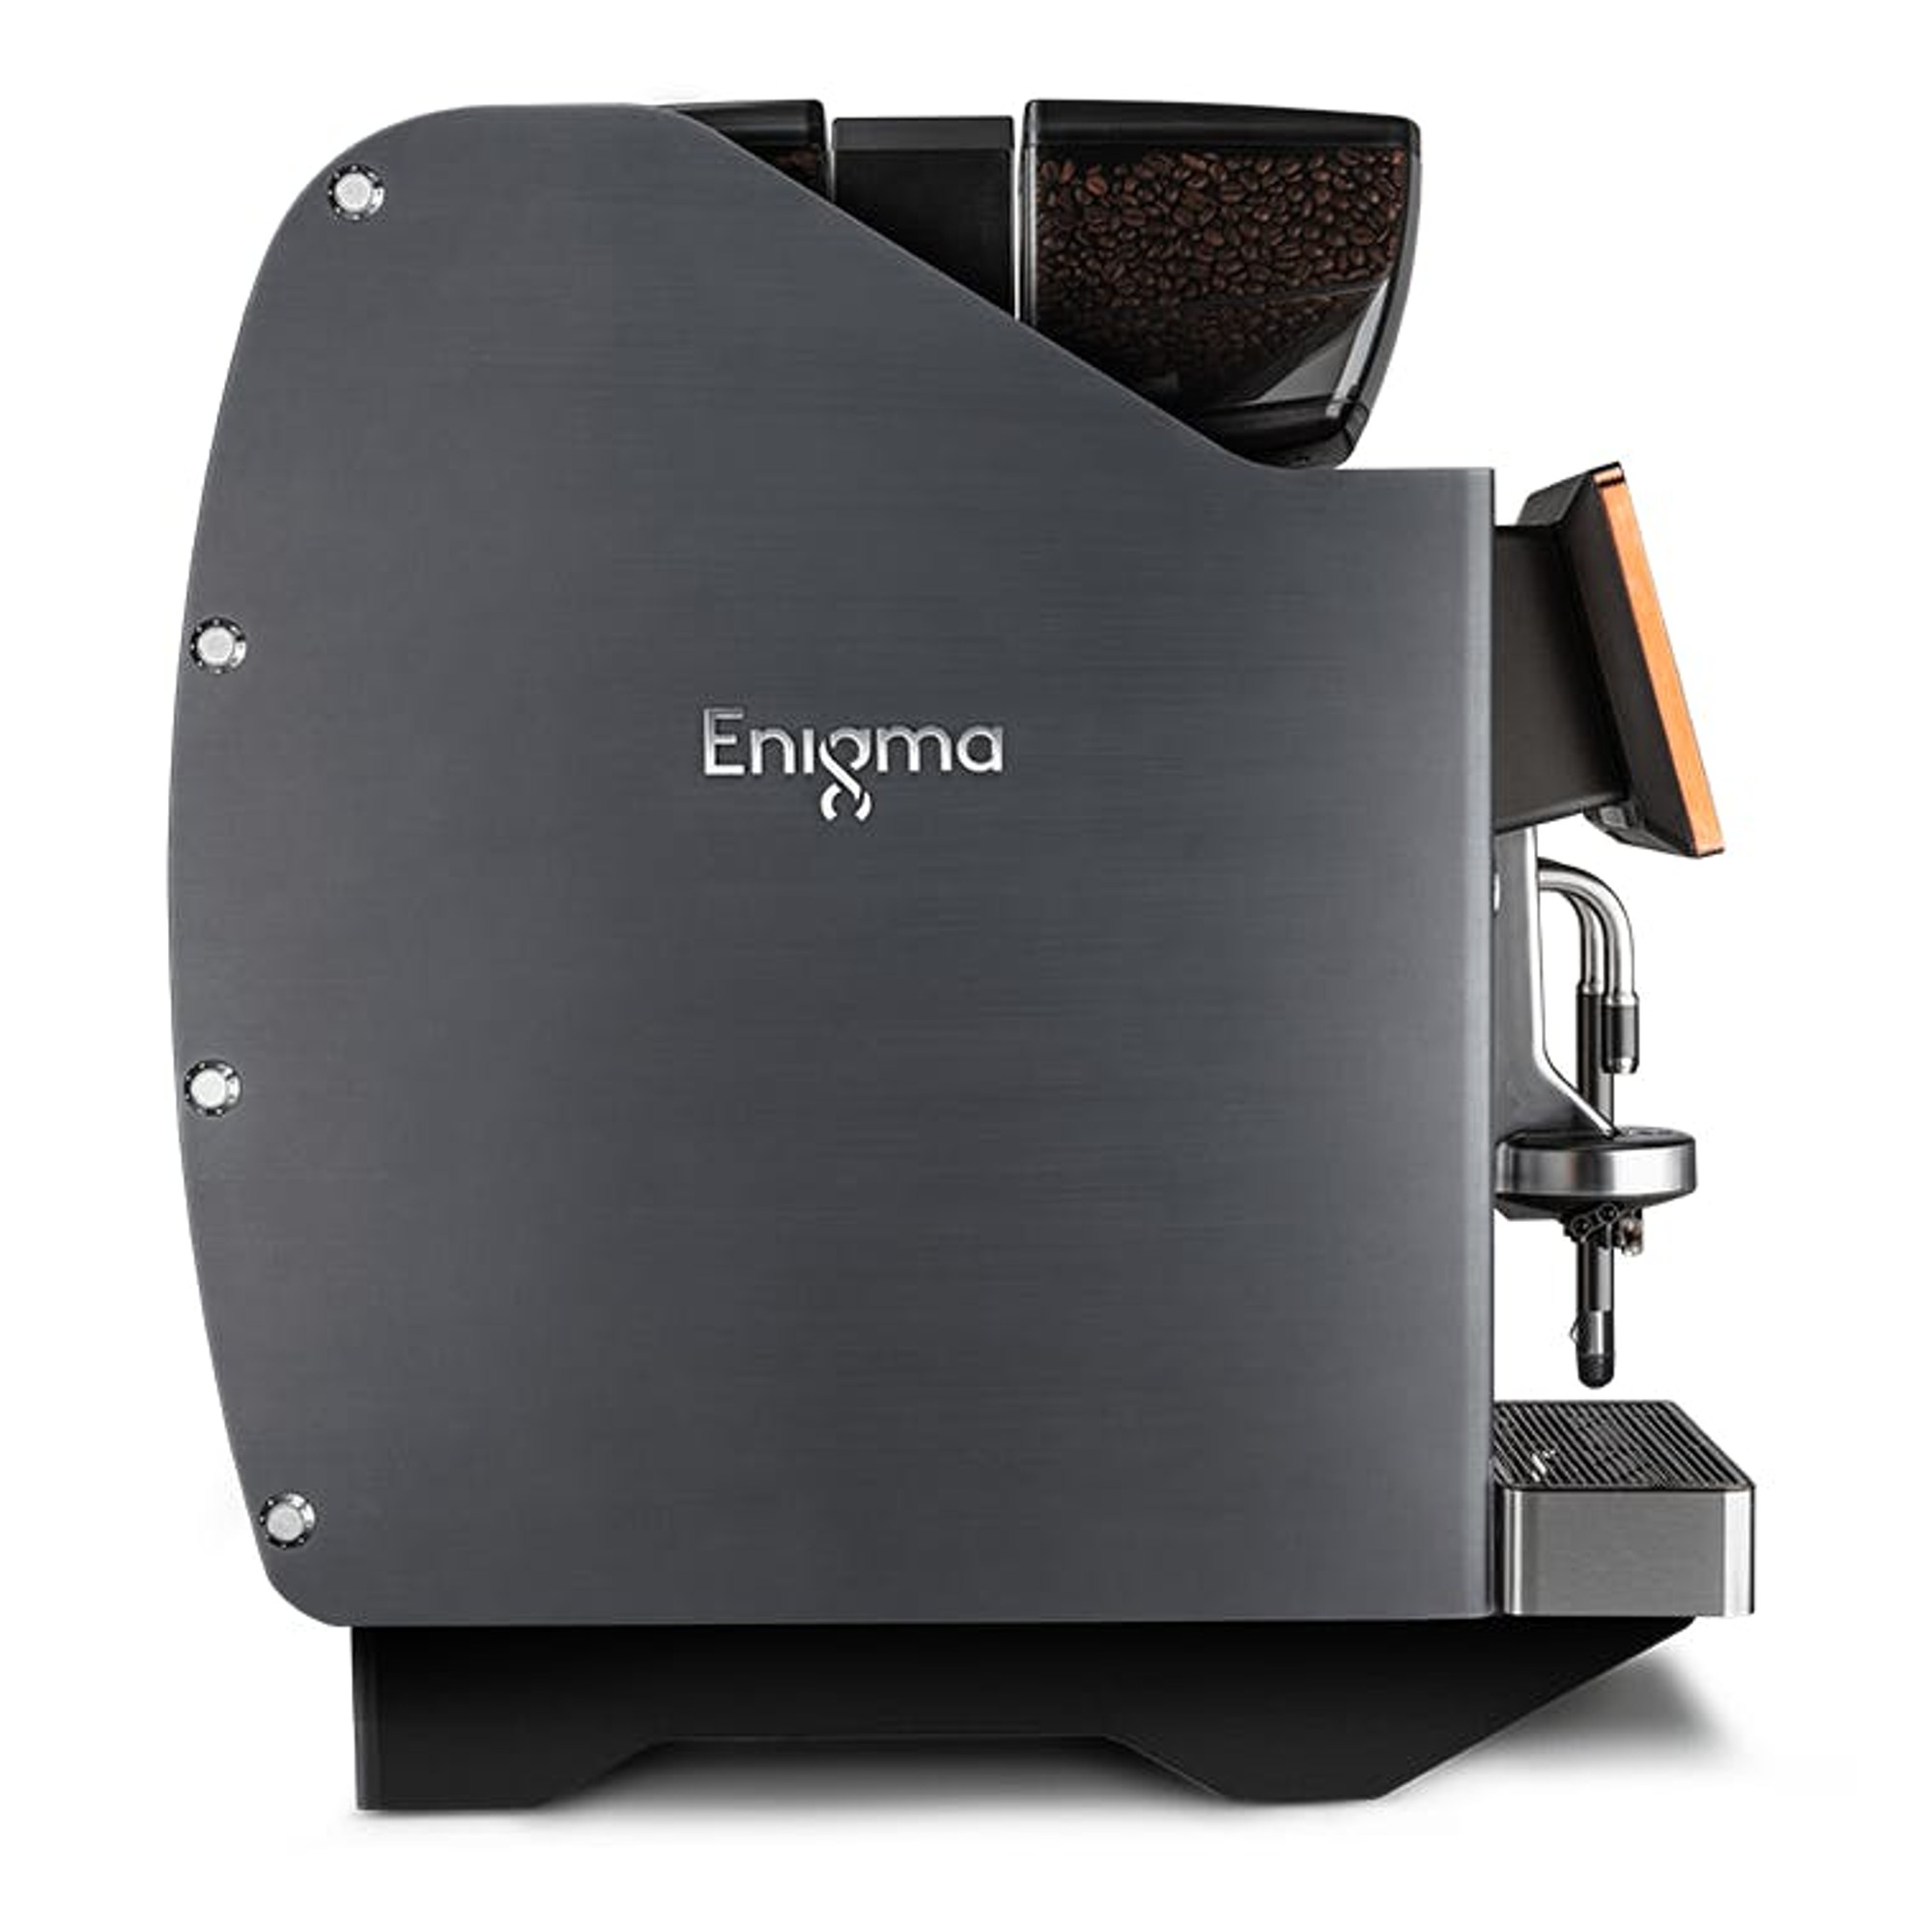 Eversys Enigma Super Automatic Espresso Machine